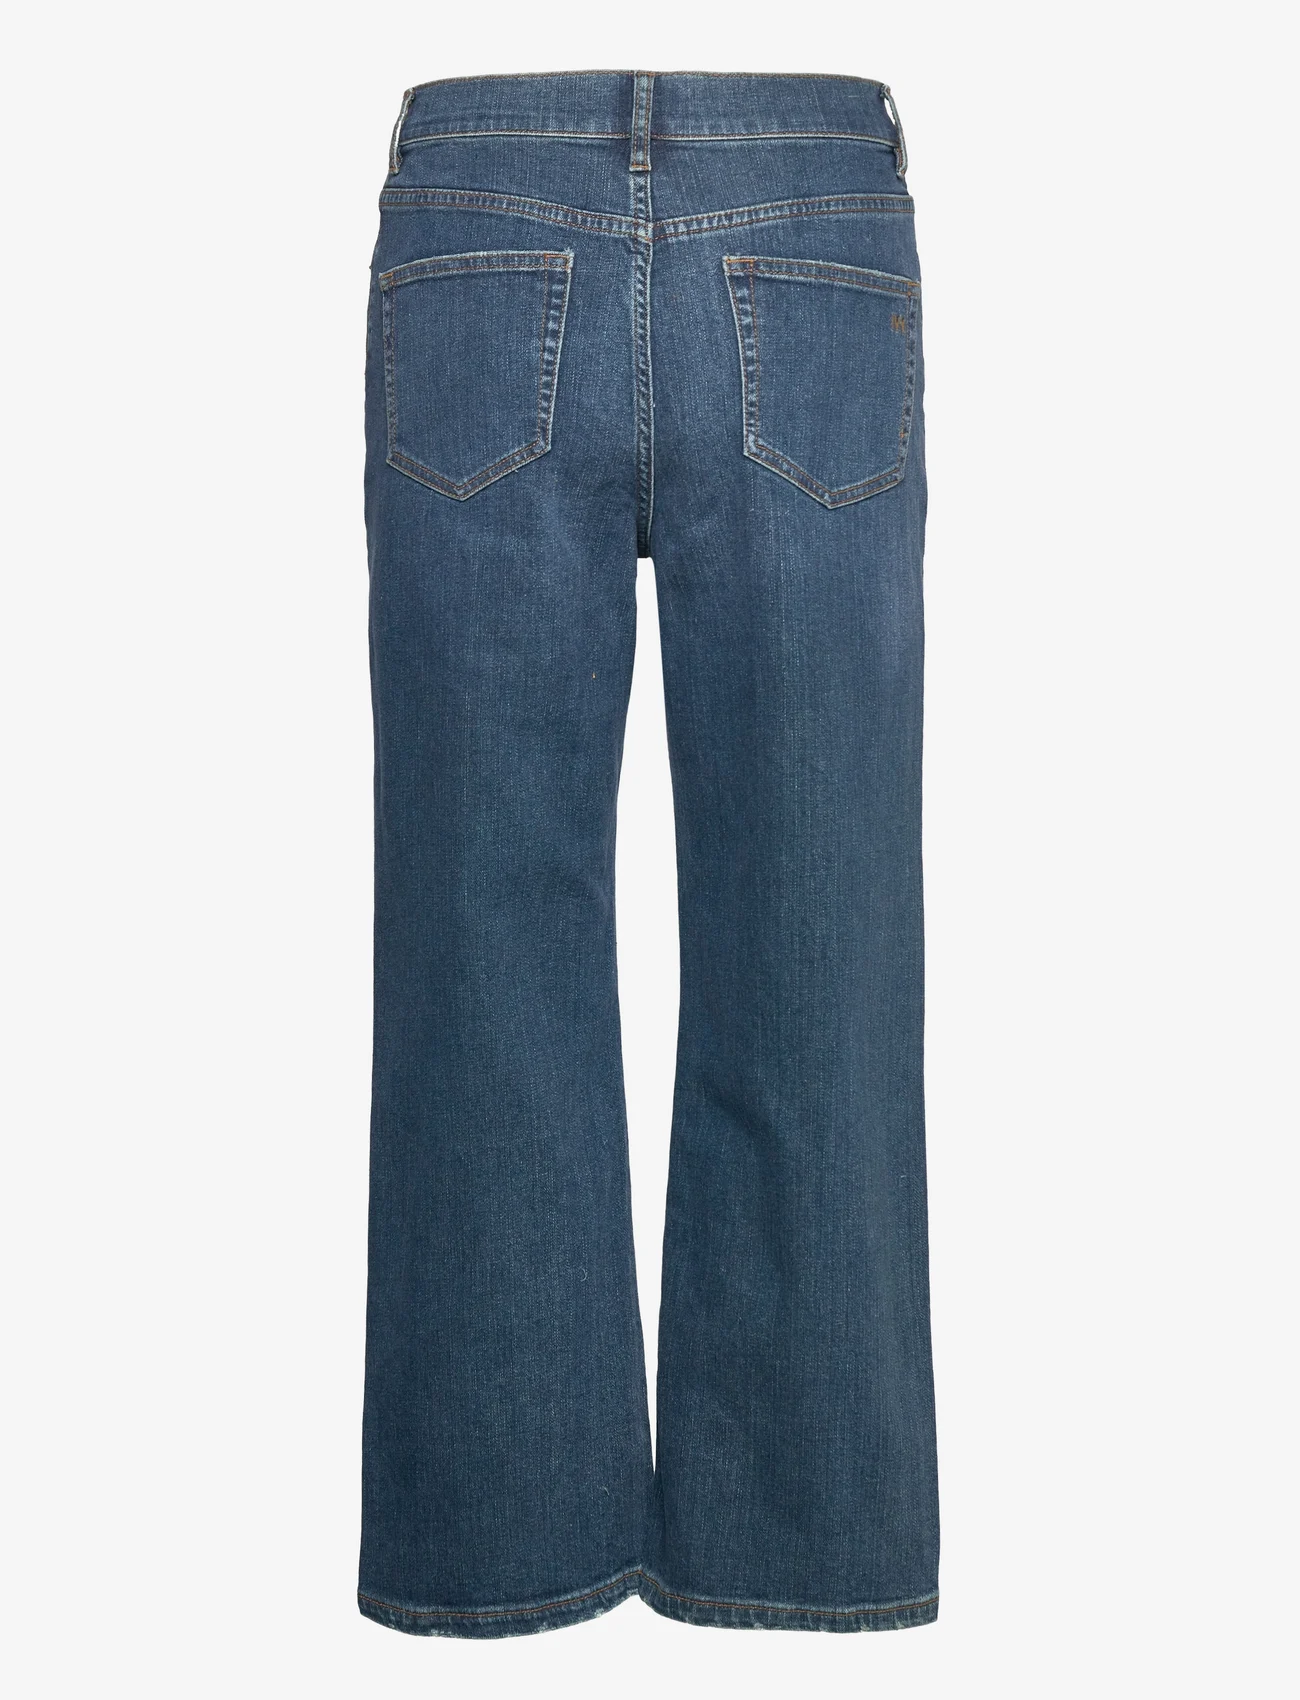 IVY Copenhagen - Milola EARTHxSWAN UHW Jeans Wash Or - jeans met wijde pijpen - denim blue - 1